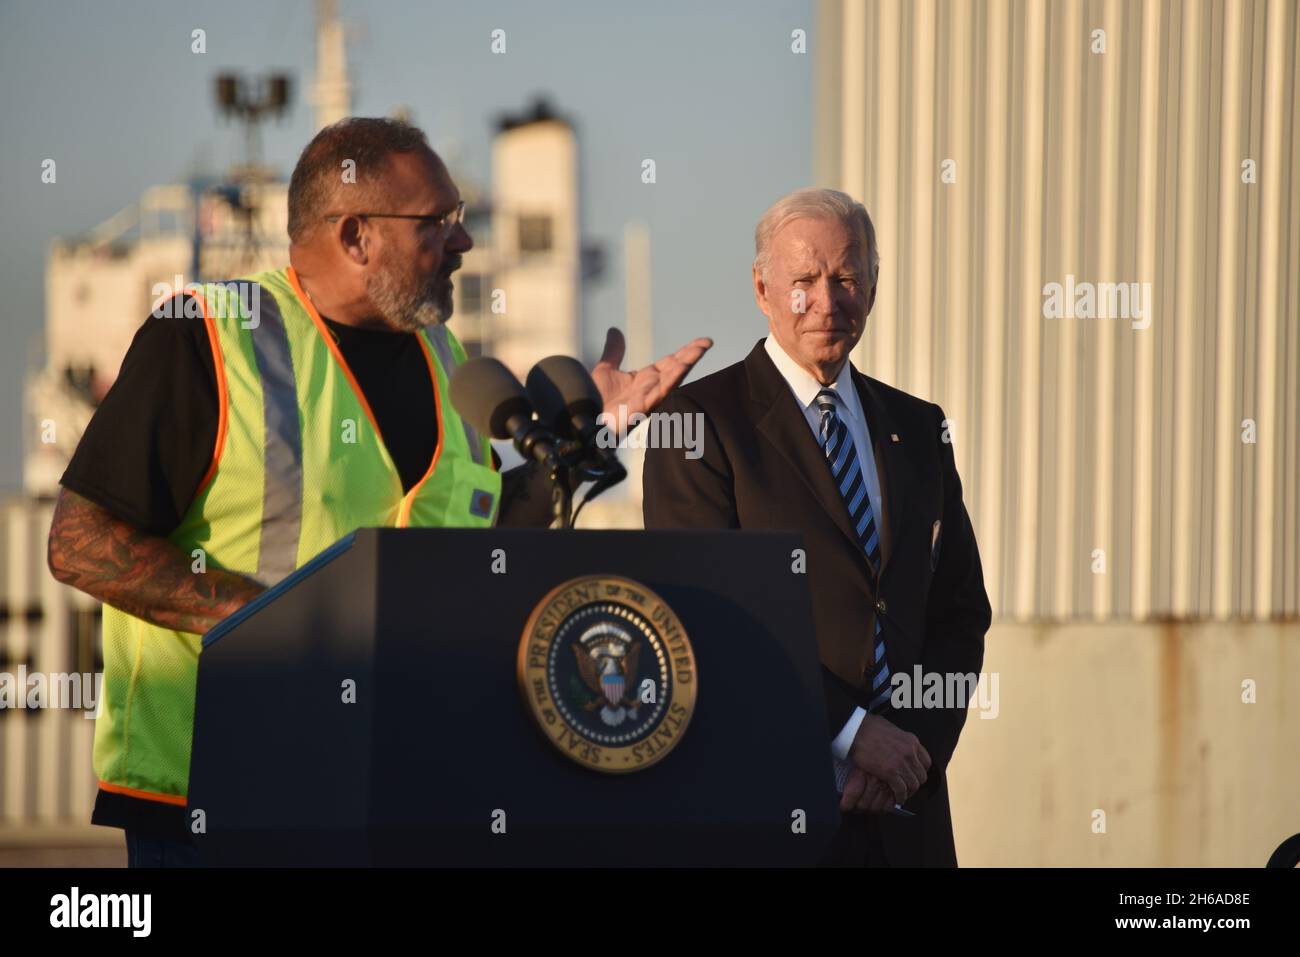 Baltimore, Usa. 10. November 2021. Der Hafenarbeiter Tony Revels stellt Präsident Joe Biden während eines Besuchs im Hafen von Baltimore am 10. November 2021 in Baltimore, Maryland, vor. Kredit: Joe Andrucyk/Maryland Gouverneursbüro/Alamy Live Nachrichten Stockfoto